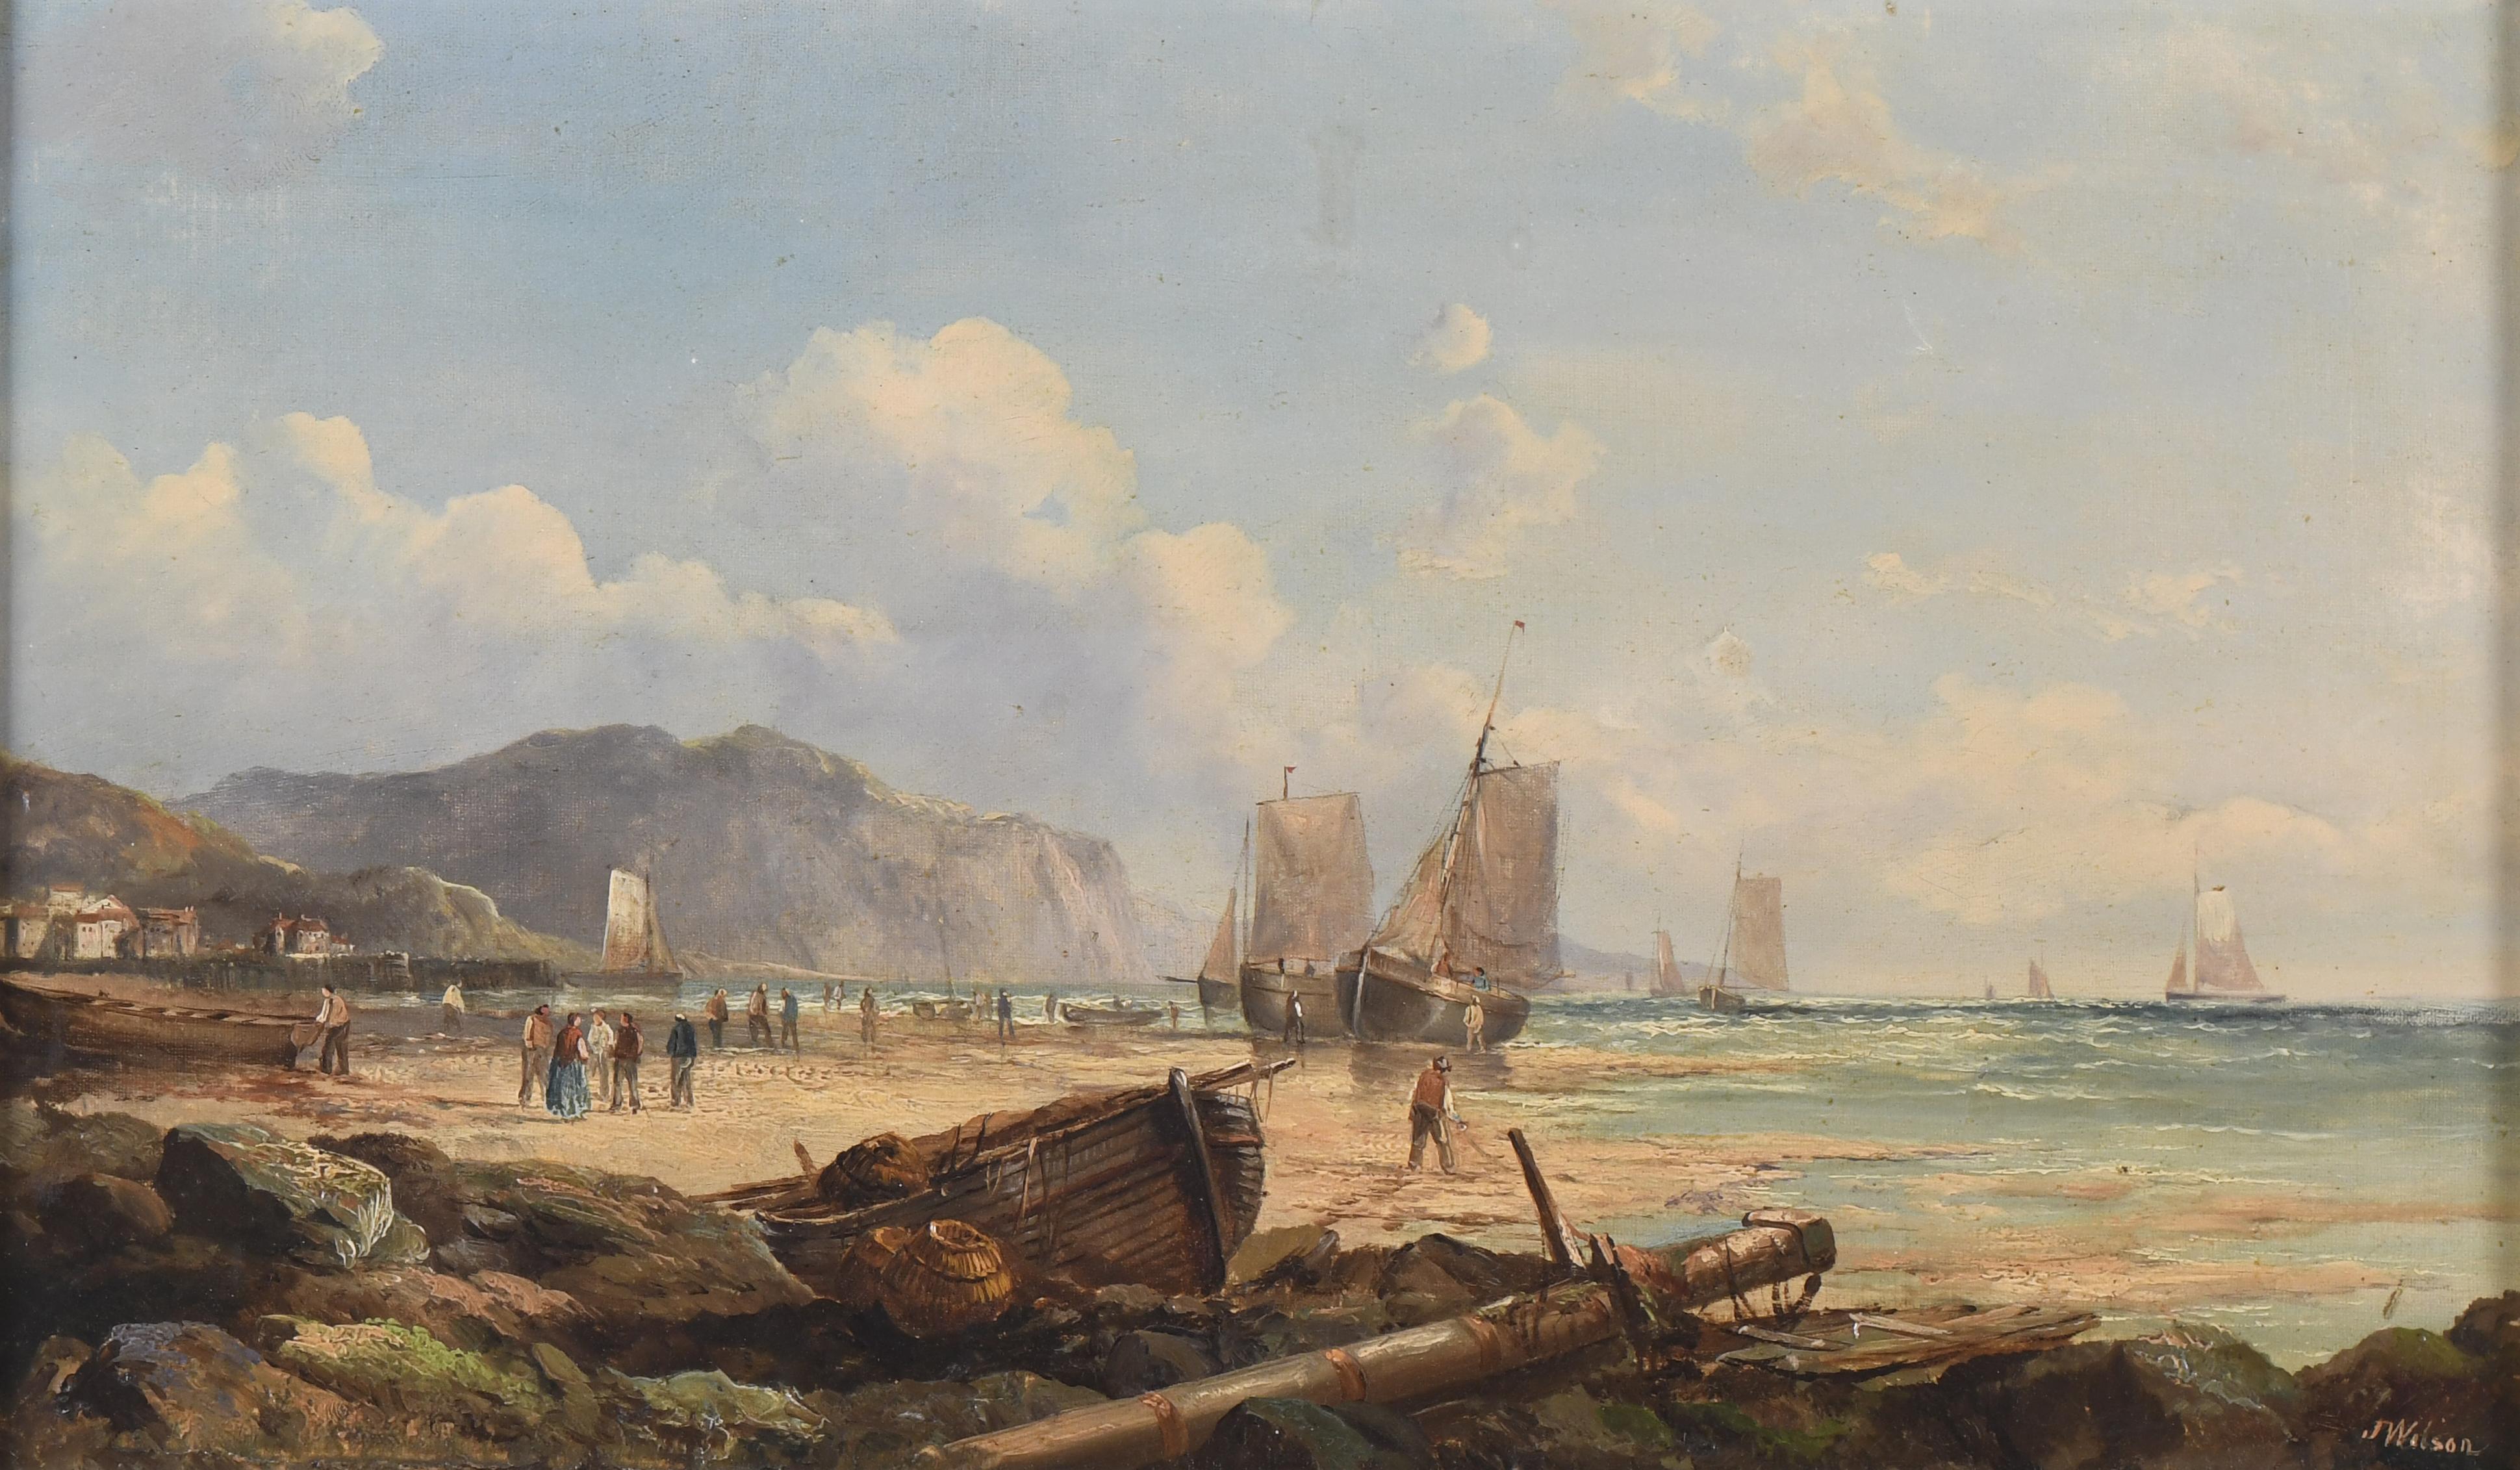 JOHN JAMES WILSON (1818-1875). "BARCAS EN LA ORILLA".